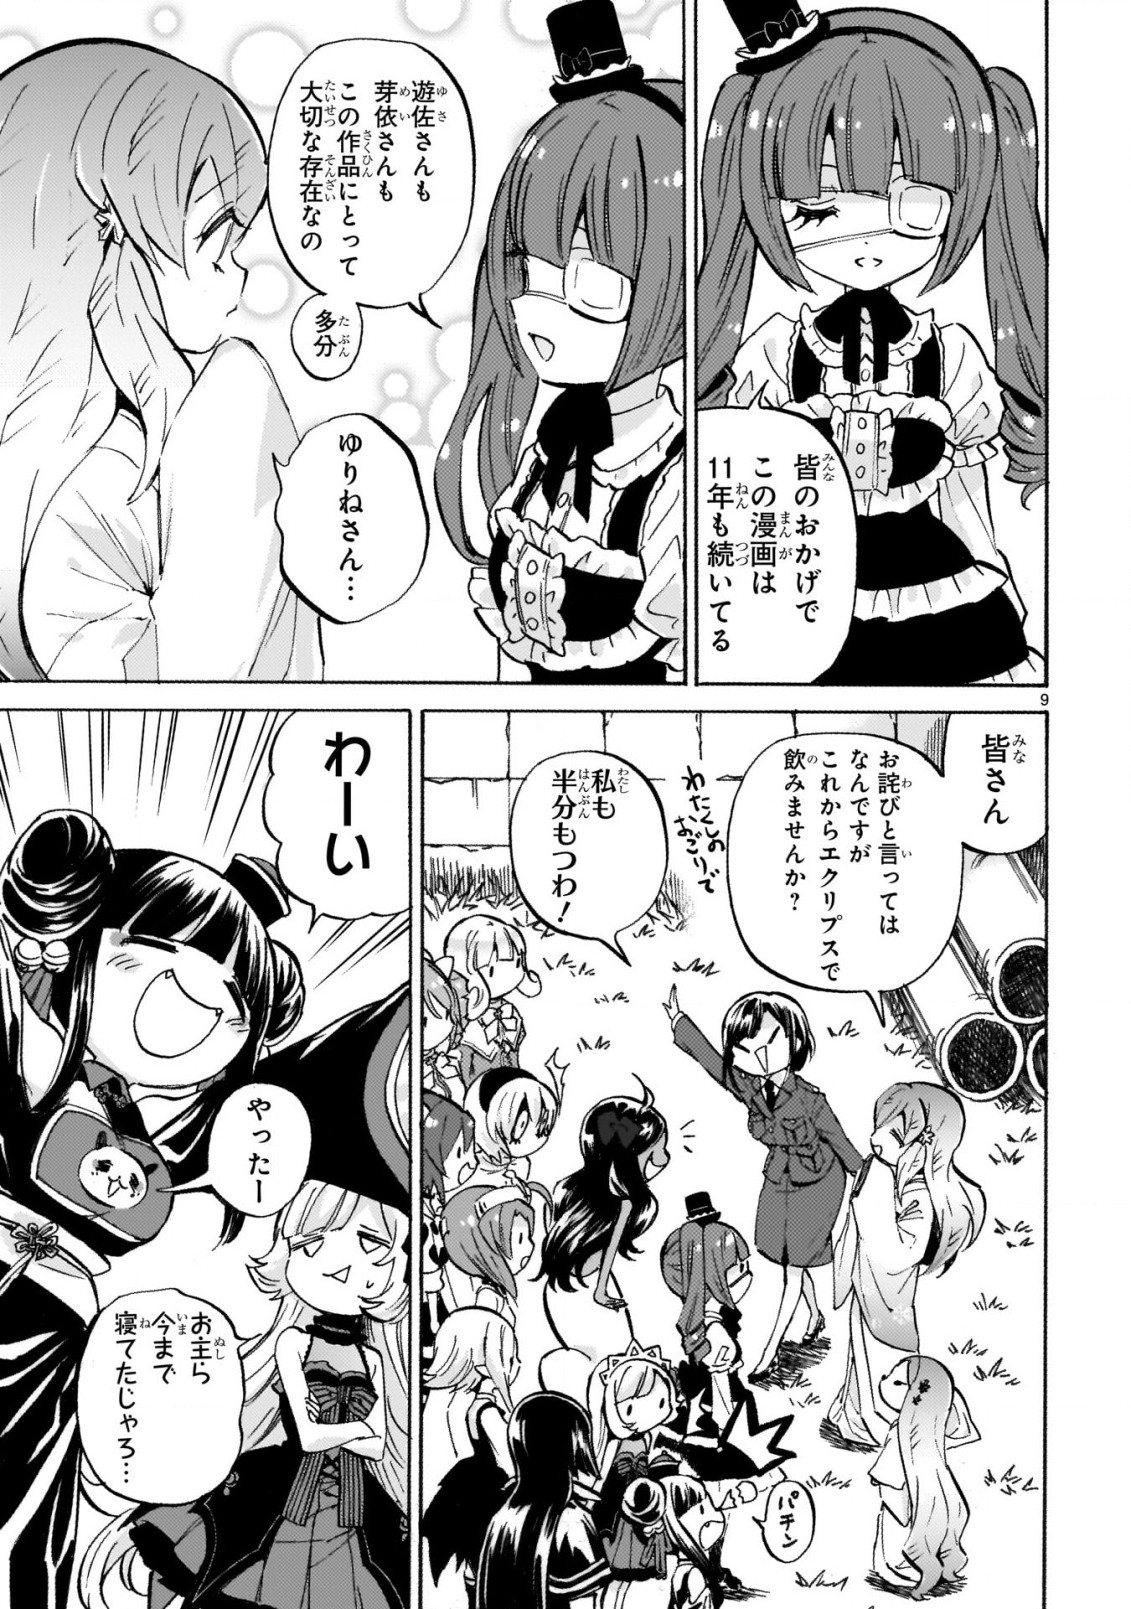 Jashin-chan Dropkick - Chapter 234 - Page 9